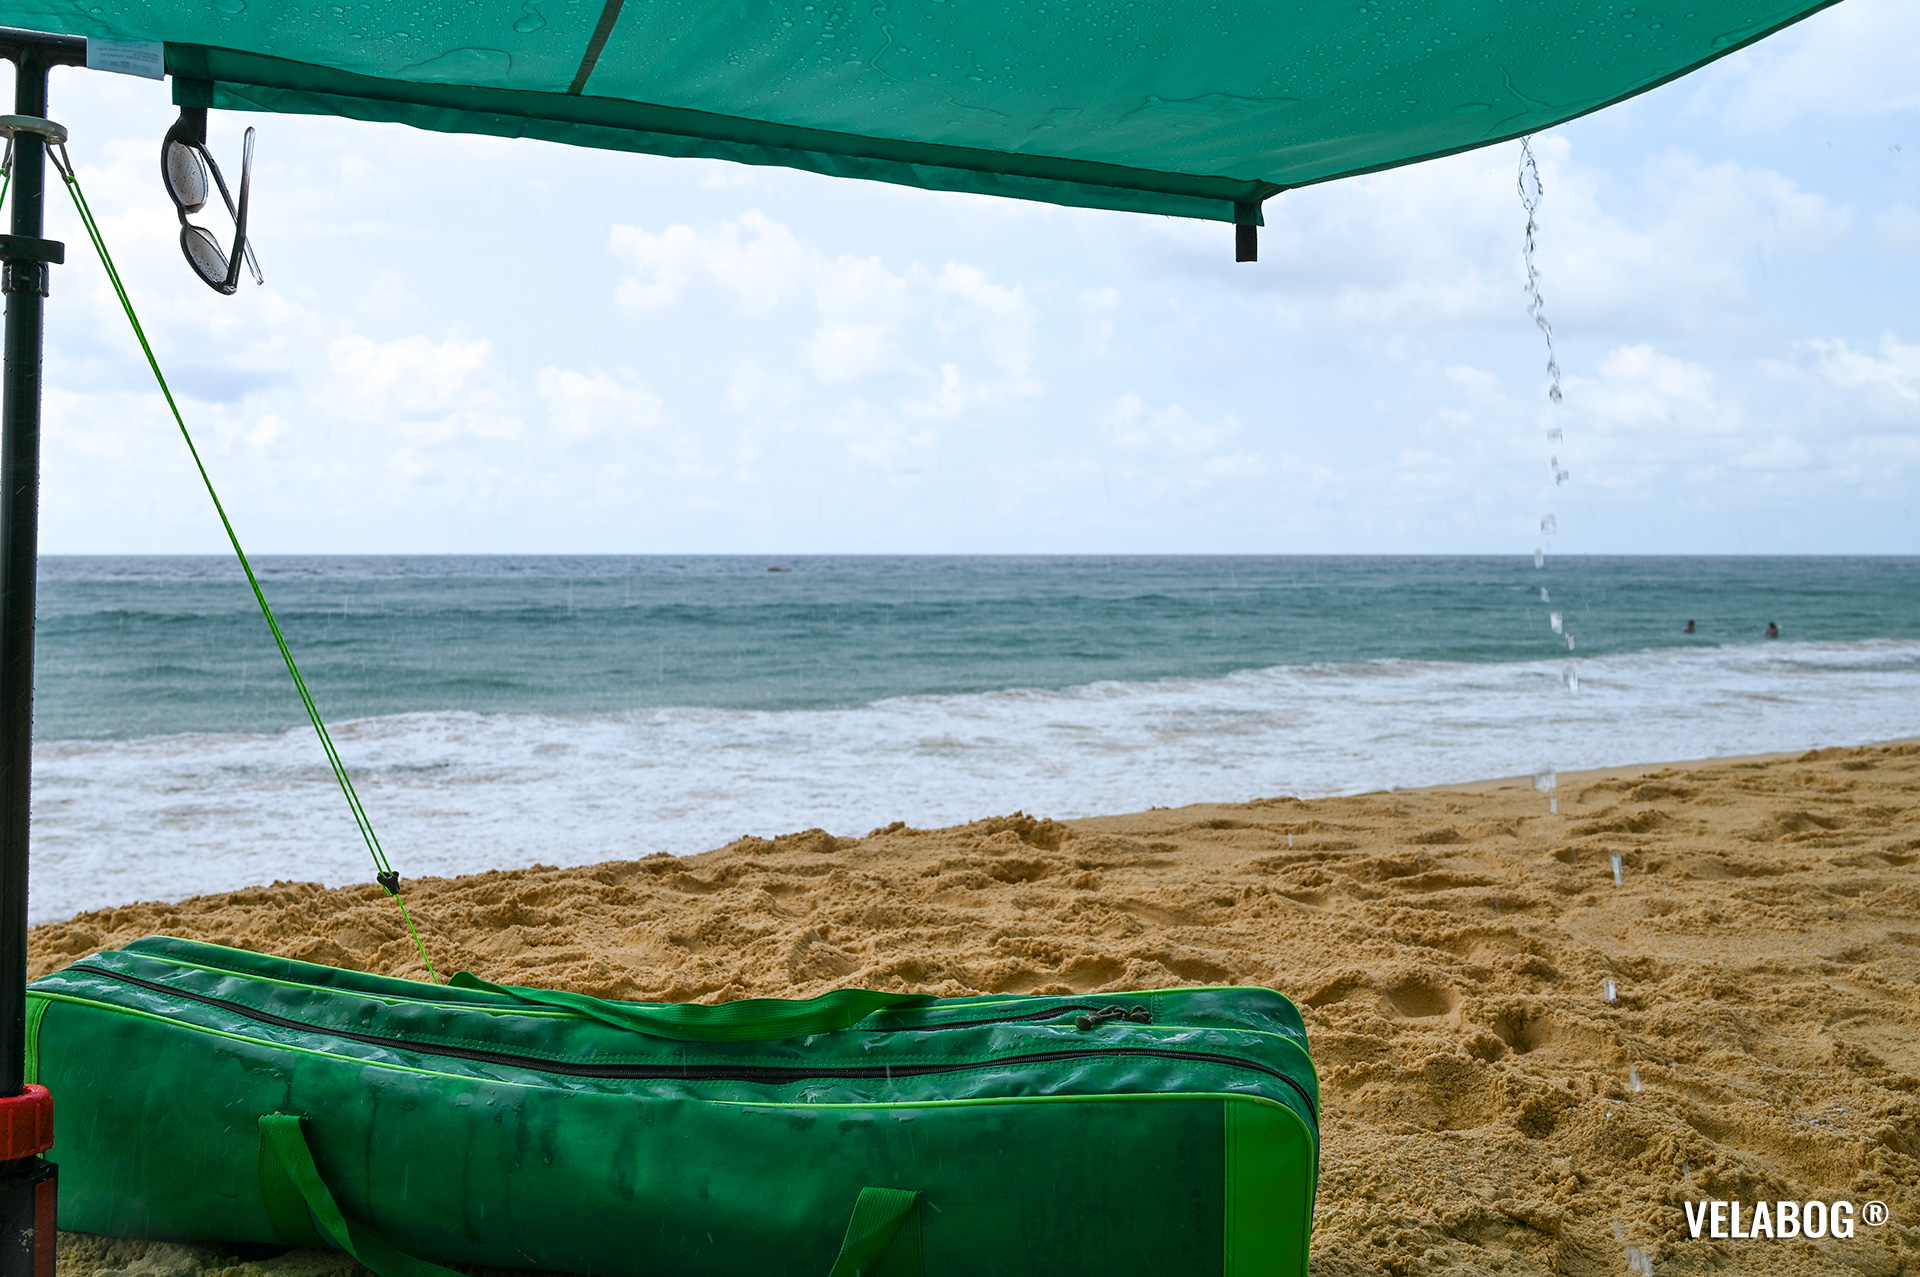 Verde tenda da spiaggia Velabog Breeze durante l'acquazzone tropicale sulla spiaggia in Thailandia.